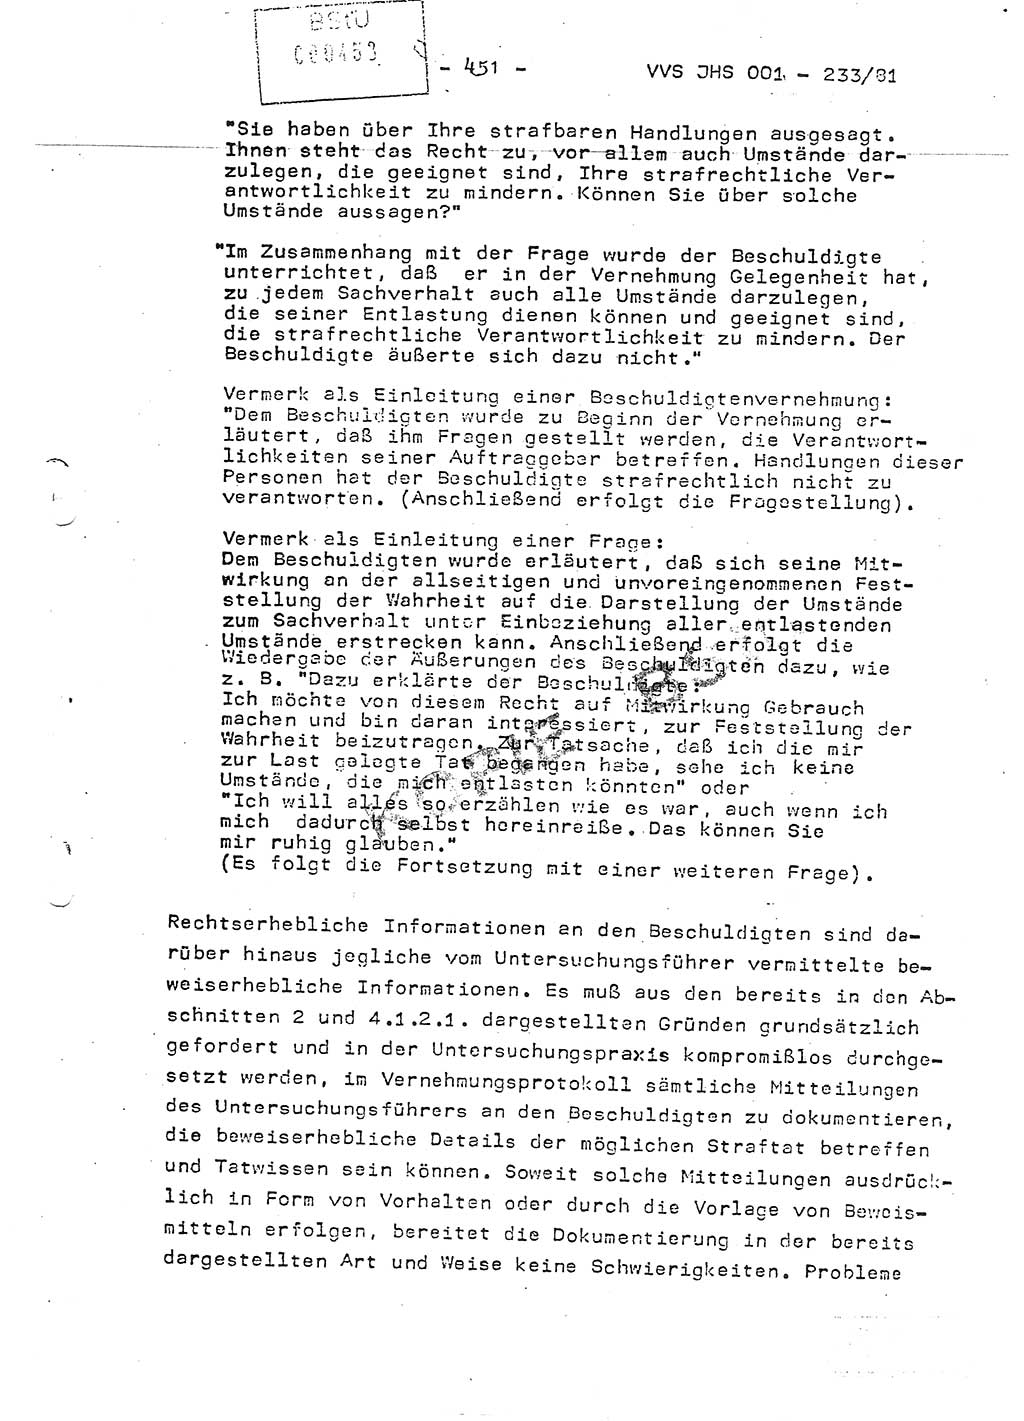 Dissertation Oberstleutnant Horst Zank (JHS), Oberstleutnant Dr. Karl-Heinz Knoblauch (JHS), Oberstleutnant Gustav-Adolf Kowalewski (HA Ⅸ), Oberstleutnant Wolfgang Plötner (HA Ⅸ), Ministerium für Staatssicherheit (MfS) [Deutsche Demokratische Republik (DDR)], Juristische Hochschule (JHS), Vertrauliche Verschlußsache (VVS) o001-233/81, Potsdam 1981, Blatt 451 (Diss. MfS DDR JHS VVS o001-233/81 1981, Bl. 451)